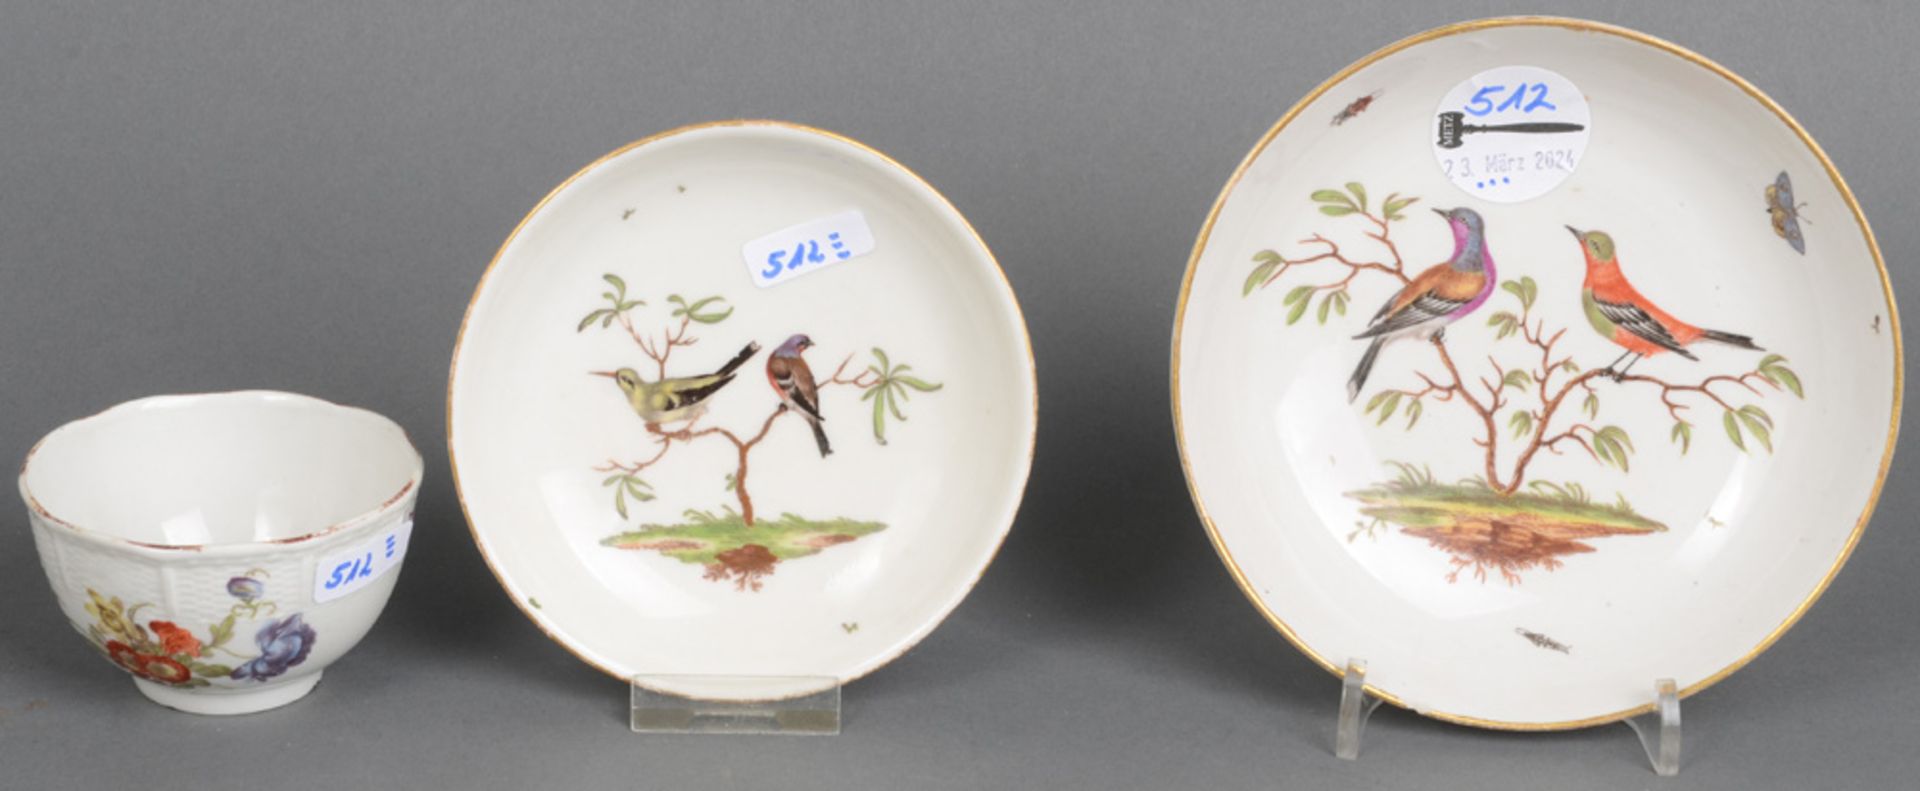 Tasse mit zwei Schalen. Ludwigsburg 1770. Porzellan, bunt bemalt mit heimischen Vögeln bzw.